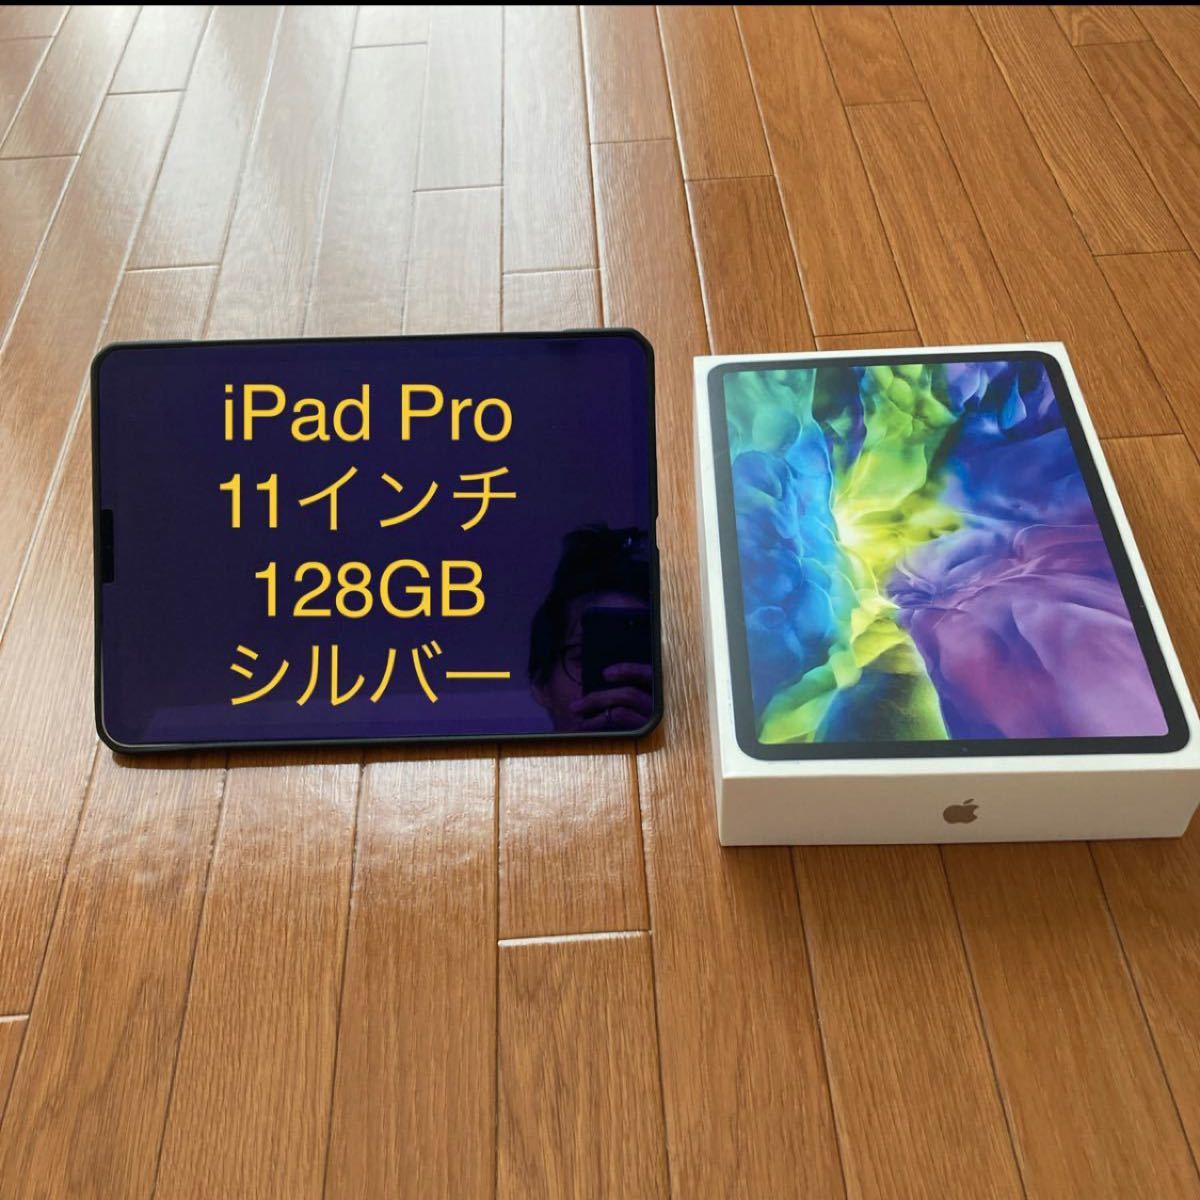 誠実 iPad-iPad Pro 11インチ 第二世代 128GB Wi-Fiモデル シルバー